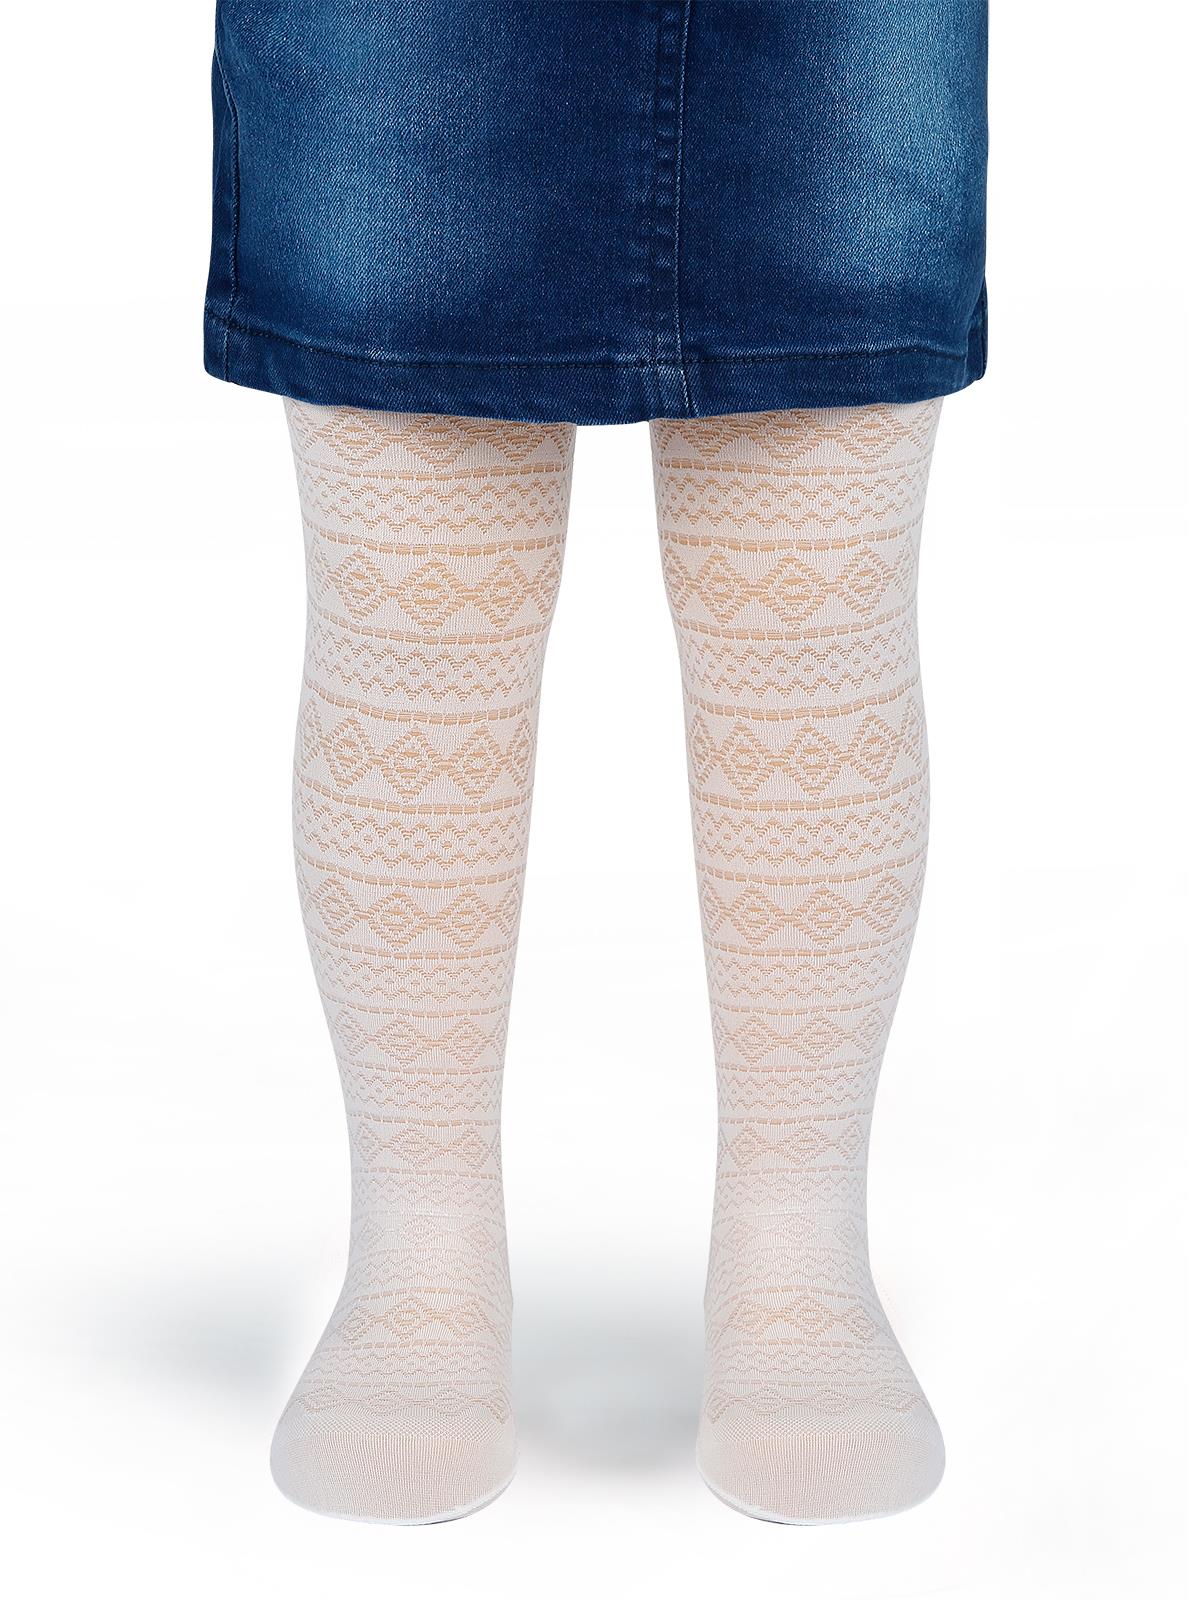 Bella Calze Kız Çocuk Külotlu Çorap 2-11 Yaş Beyaz